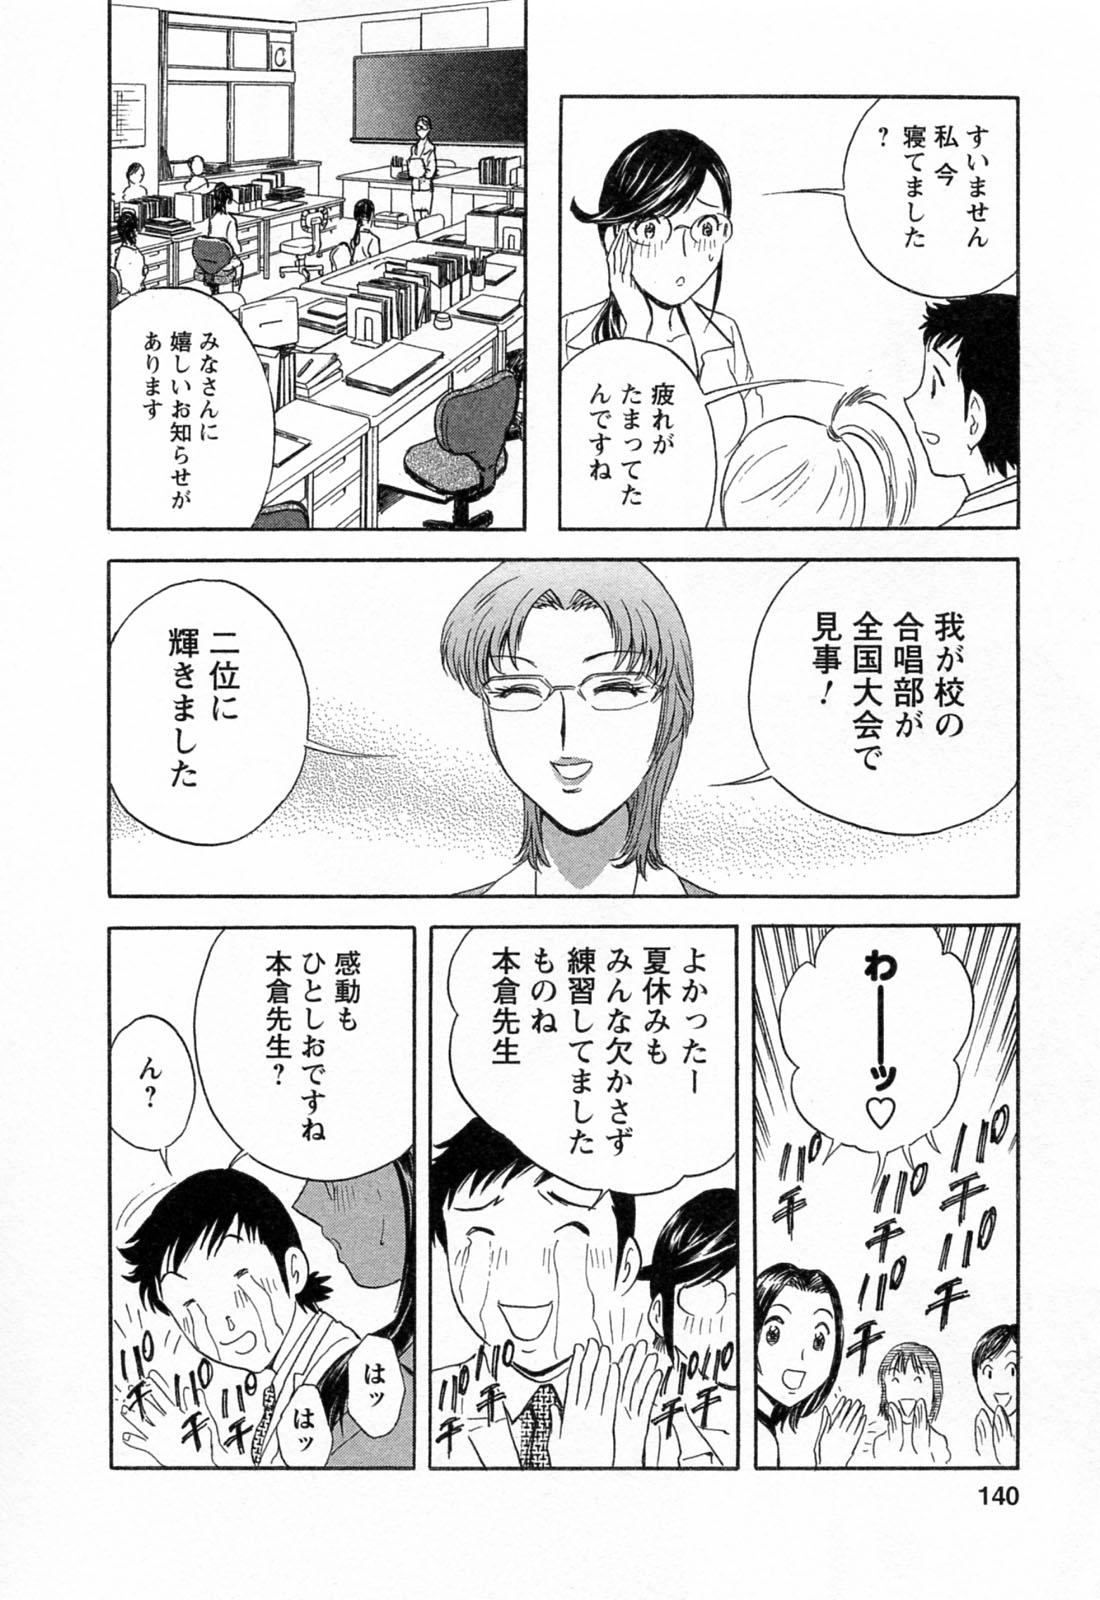 [Hidemaru] Mo-Retsu! Boin Sensei (Boing Boing Teacher) Vol.4 141